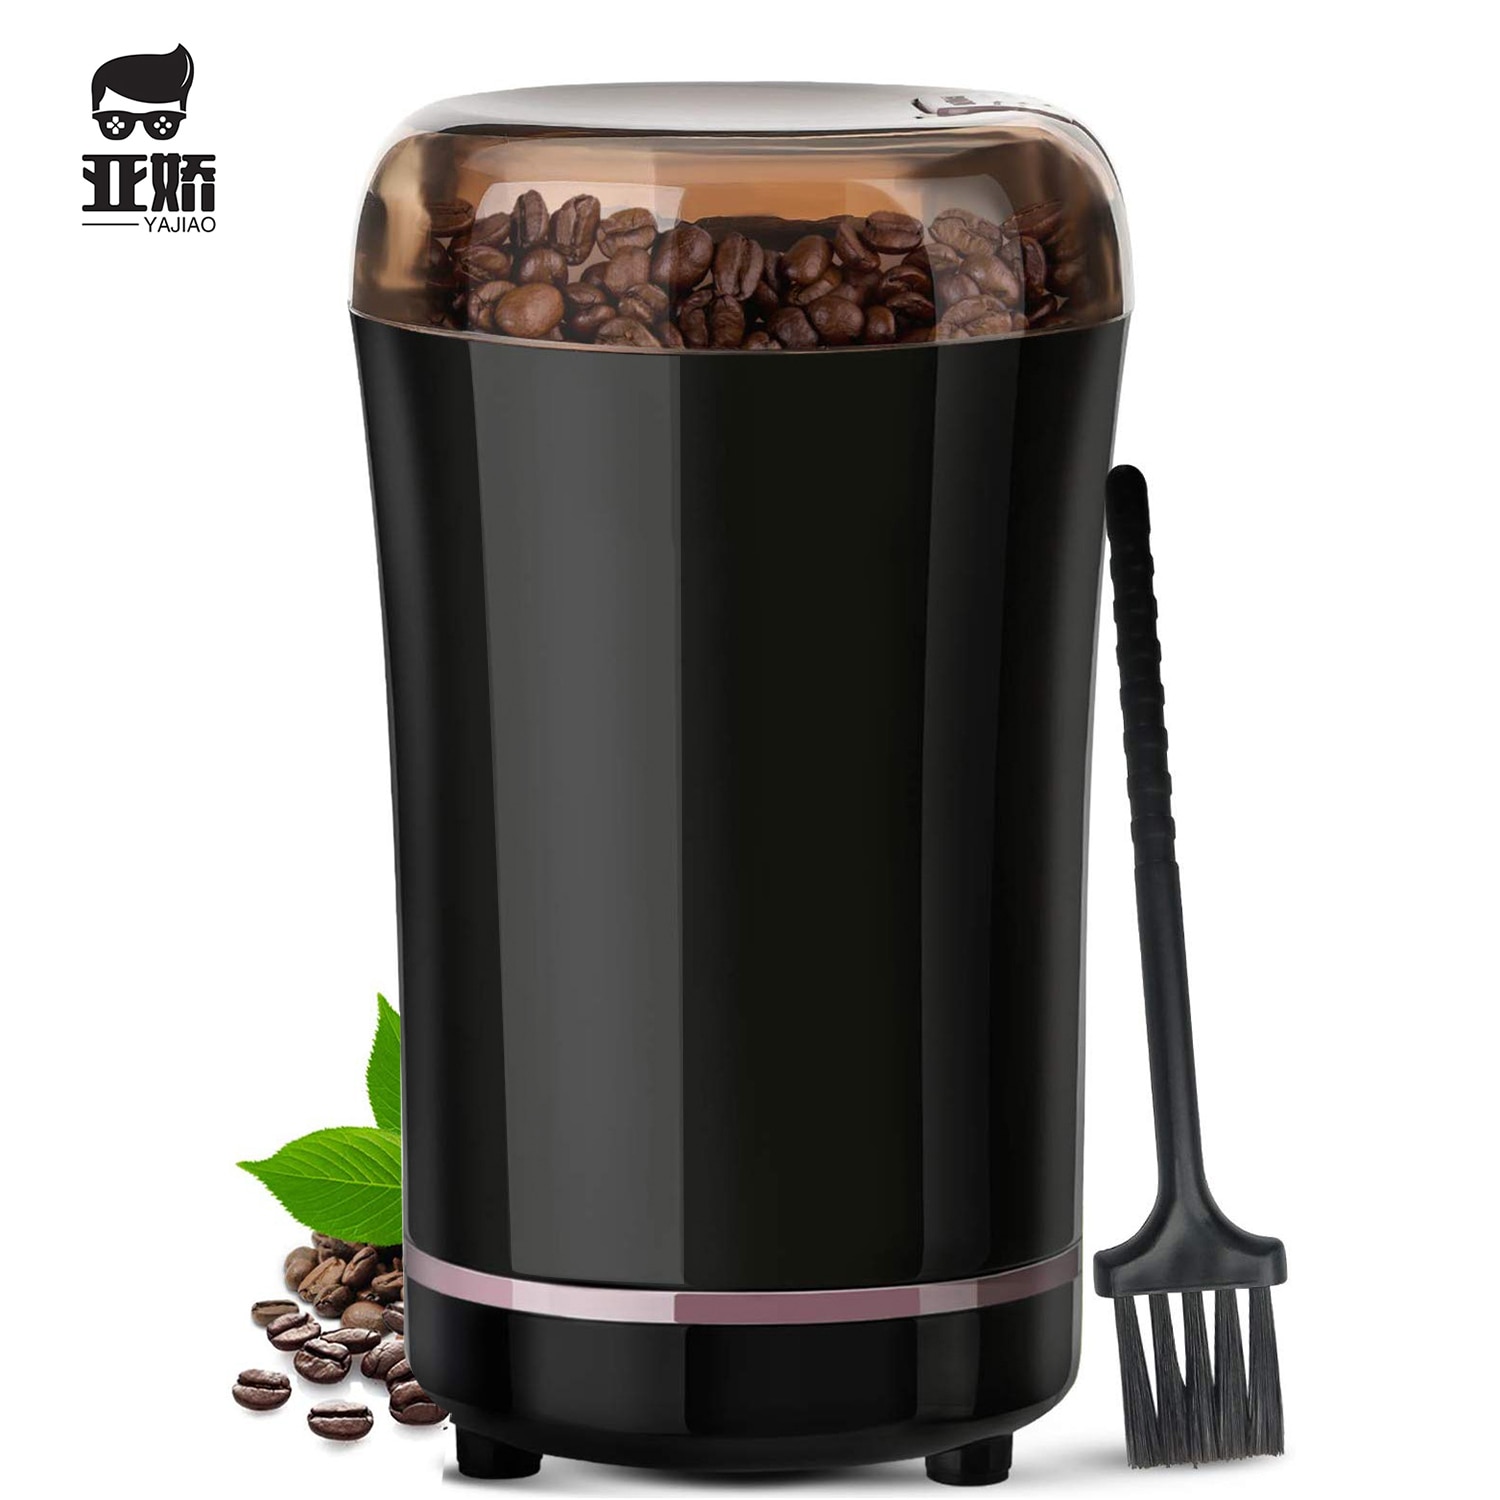 Yajiao Koffie Machine Elektrische Grinder Bean Spice Met Roestvrijstalen Lemmet Afneembare Power Voor Koffiebonen Gronden Korrels